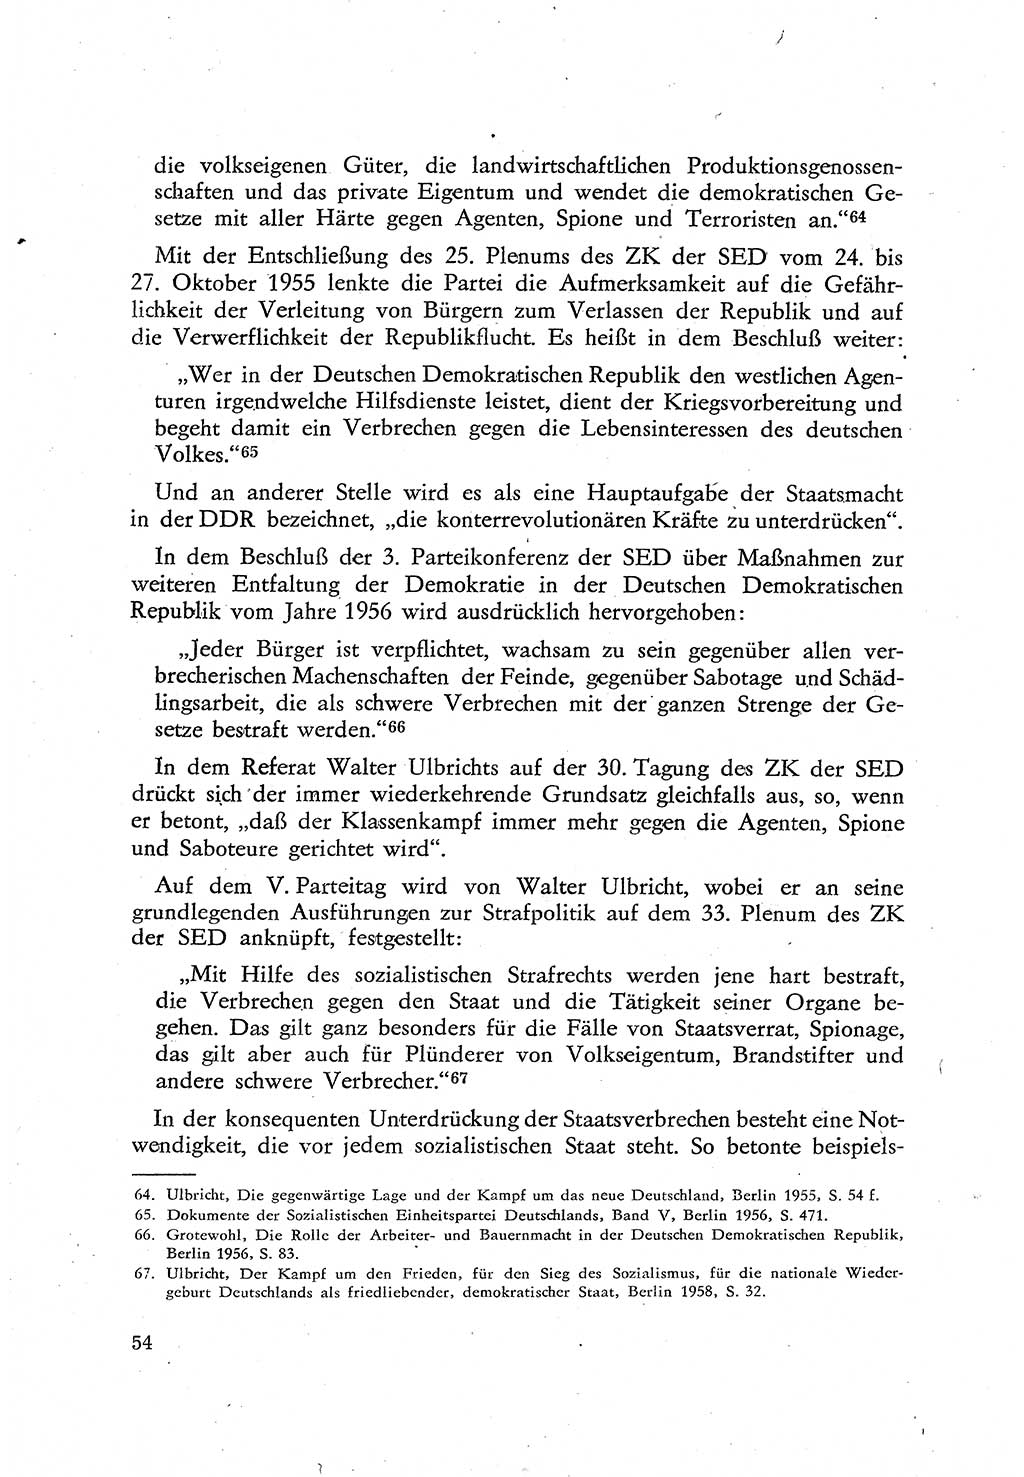 Beiträge zum Strafrecht [Deutsche Demokratische Republik (DDR)], Staatsverbrechen 1959, Seite 54 (Beitr. Strafr. DDR St.-Verbr. 1959, S. 54)